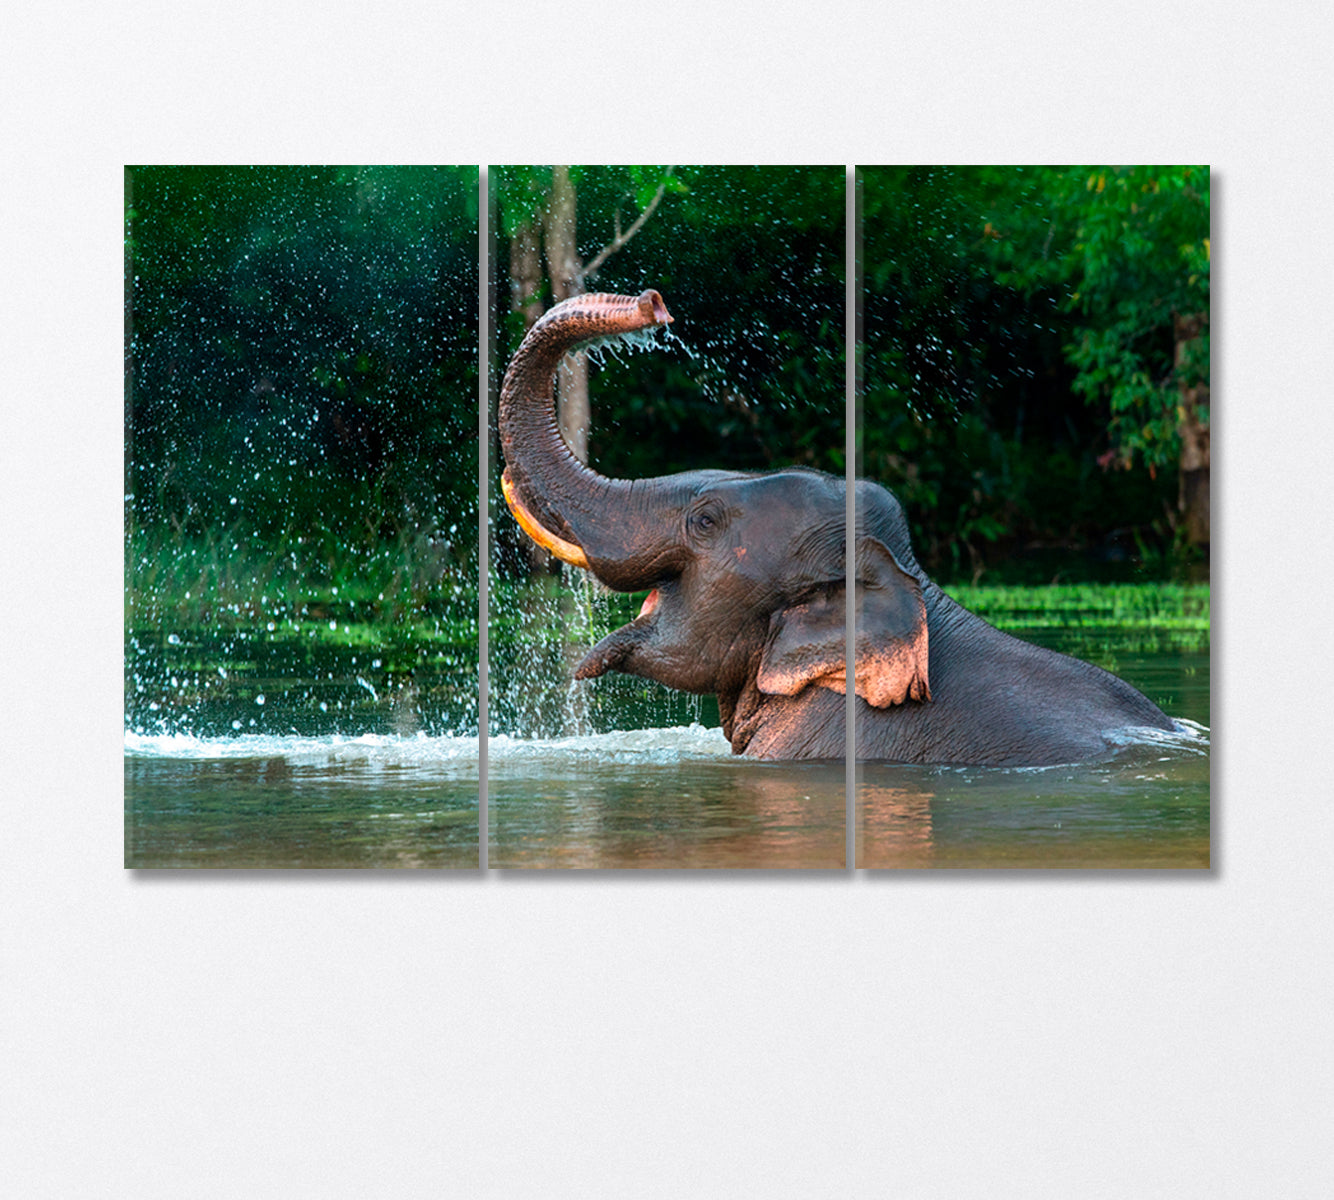 Asian Elephant Enjoying a Bath Canvas Print-Canvas Print-CetArt-3 Panels-36x24 inches-CetArt